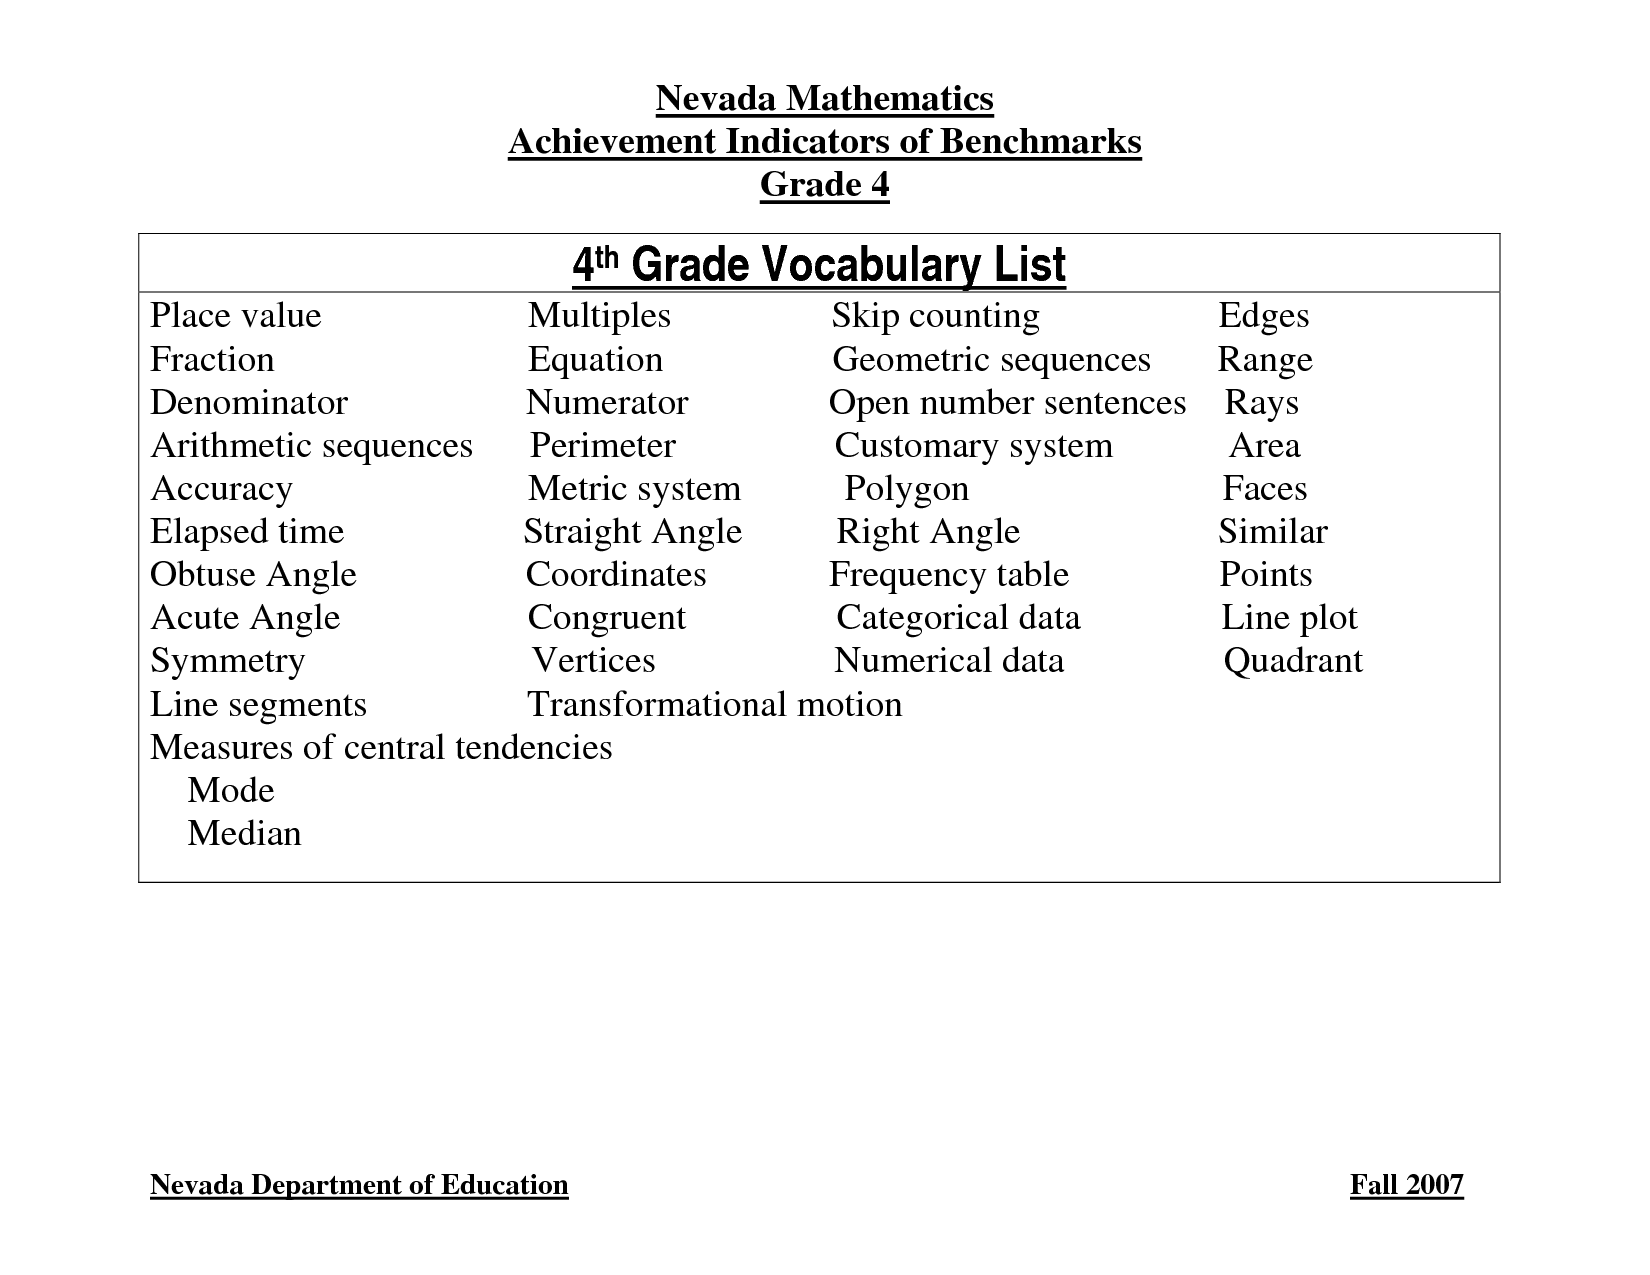 4th Grade Vocabulary Words